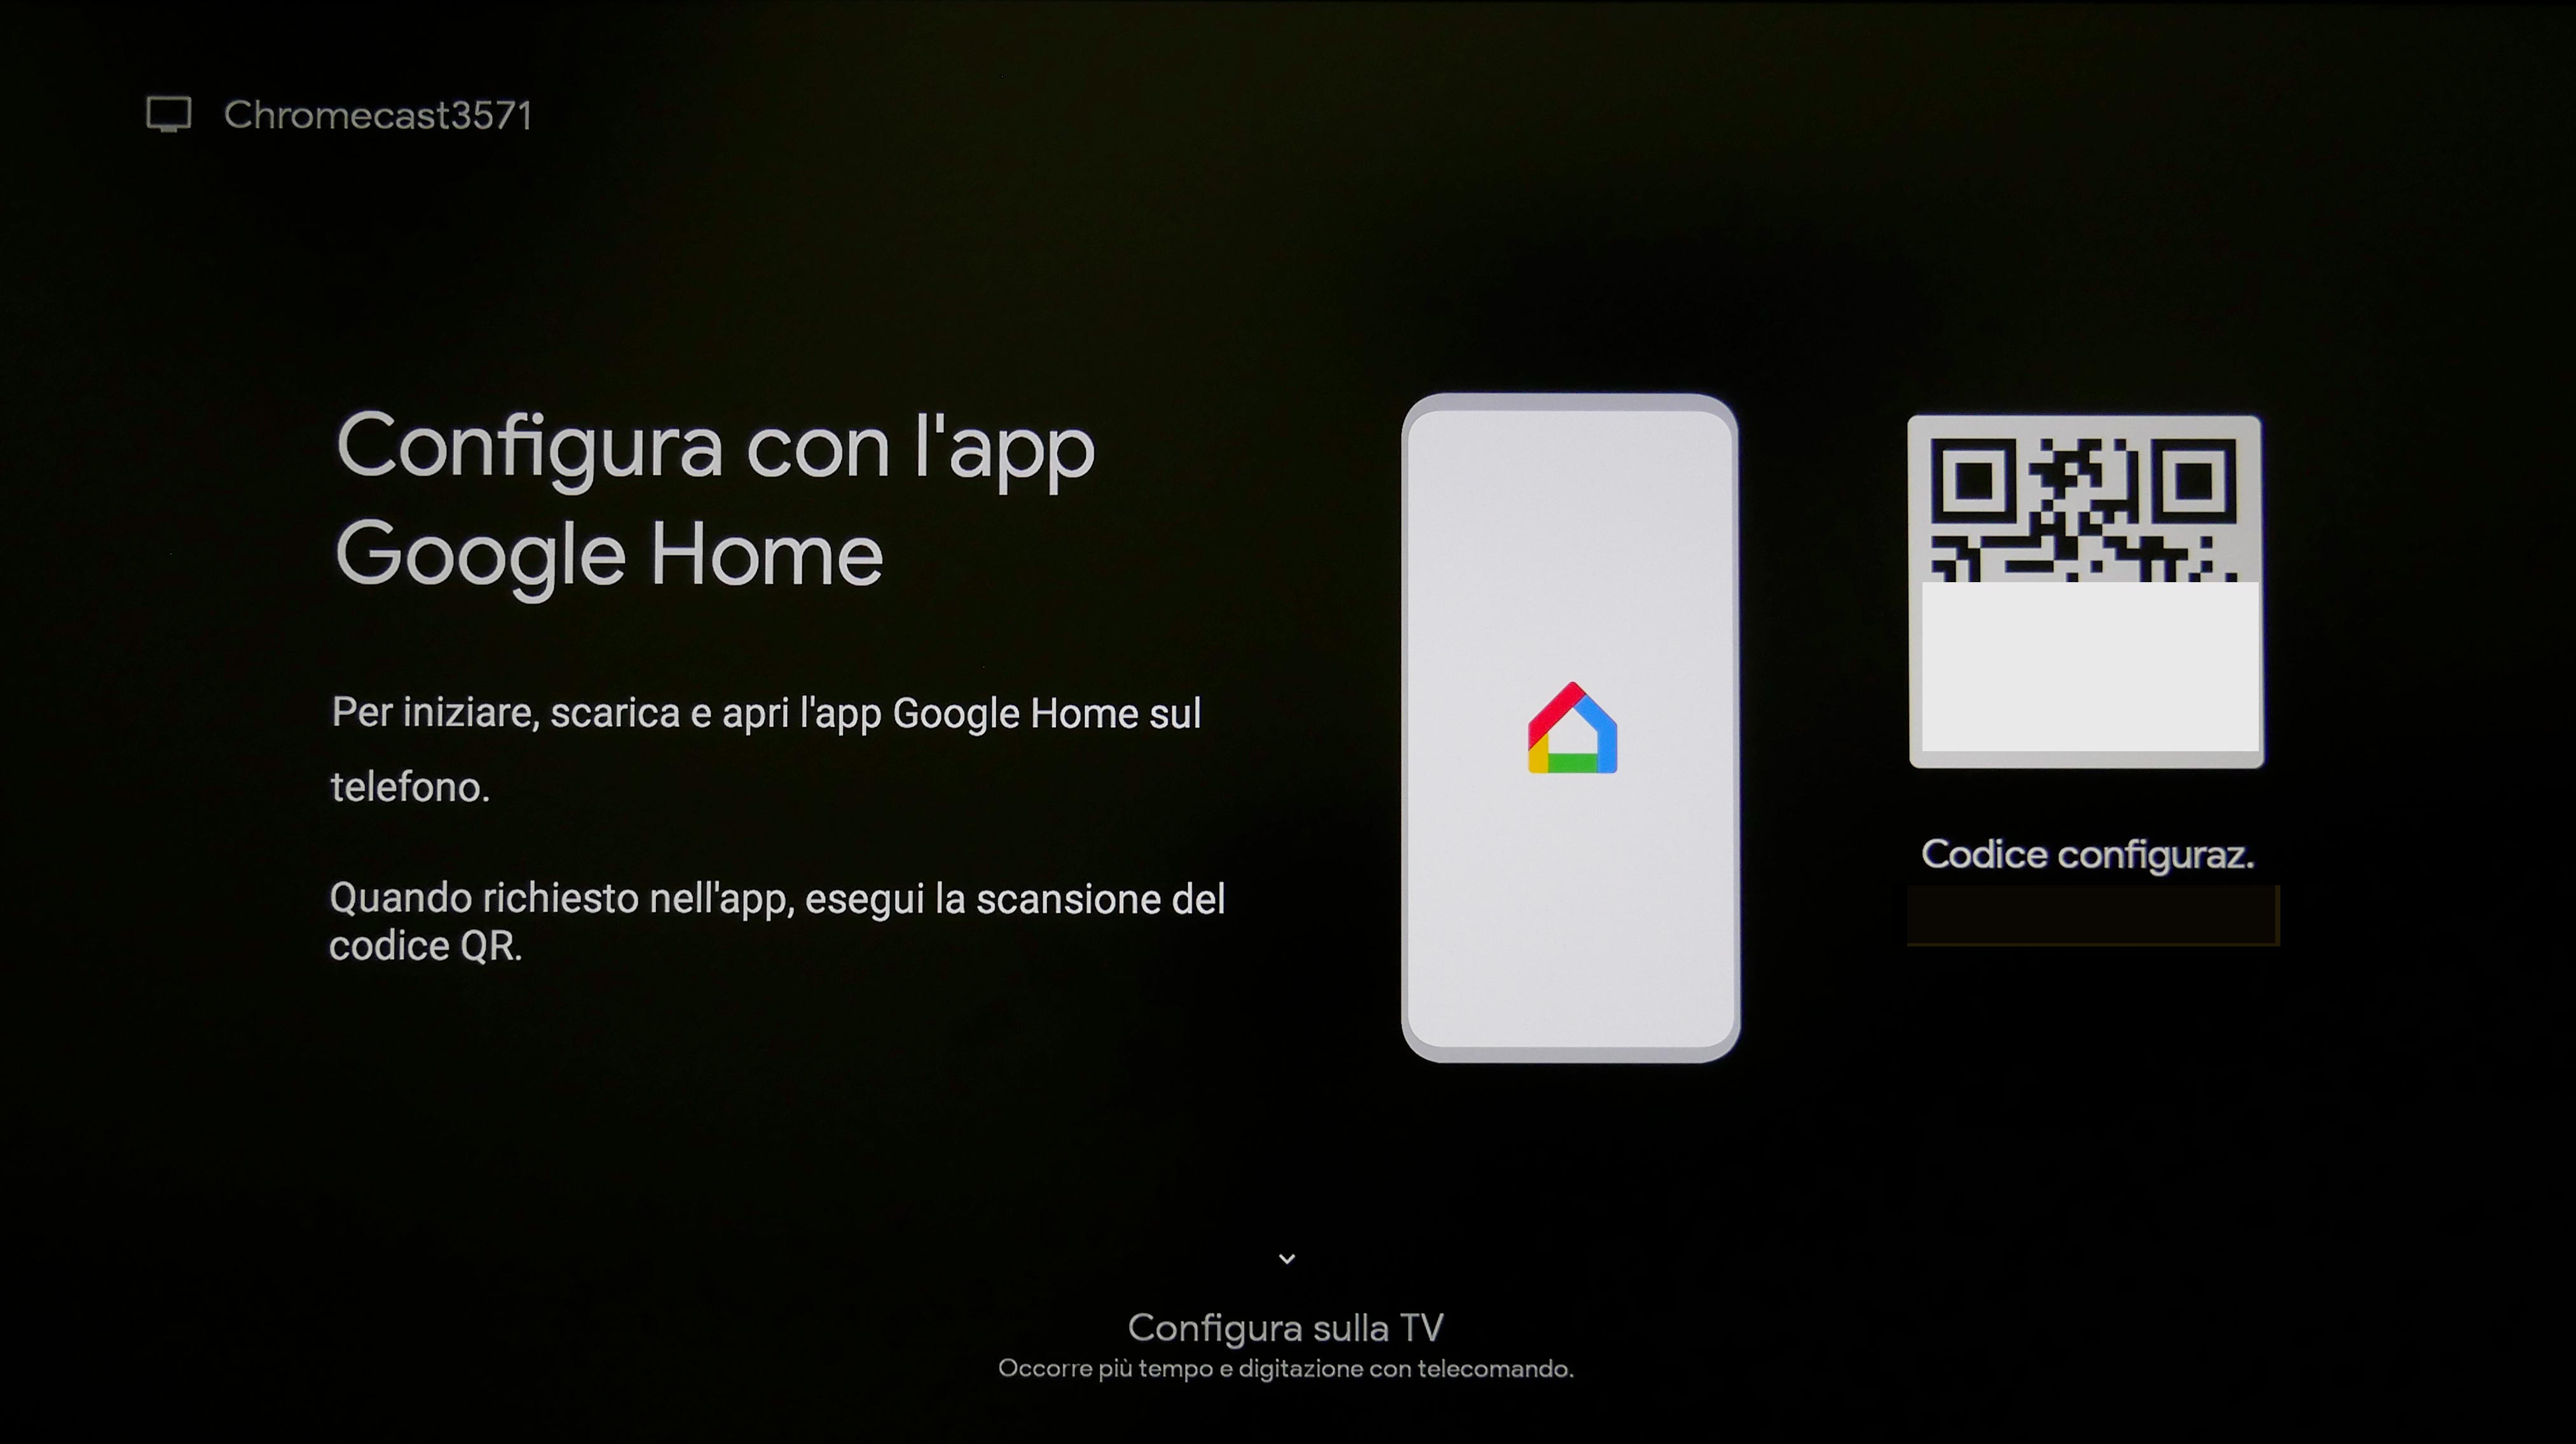 Chromecast con Google TV: software più completo, prezzo più contenuto